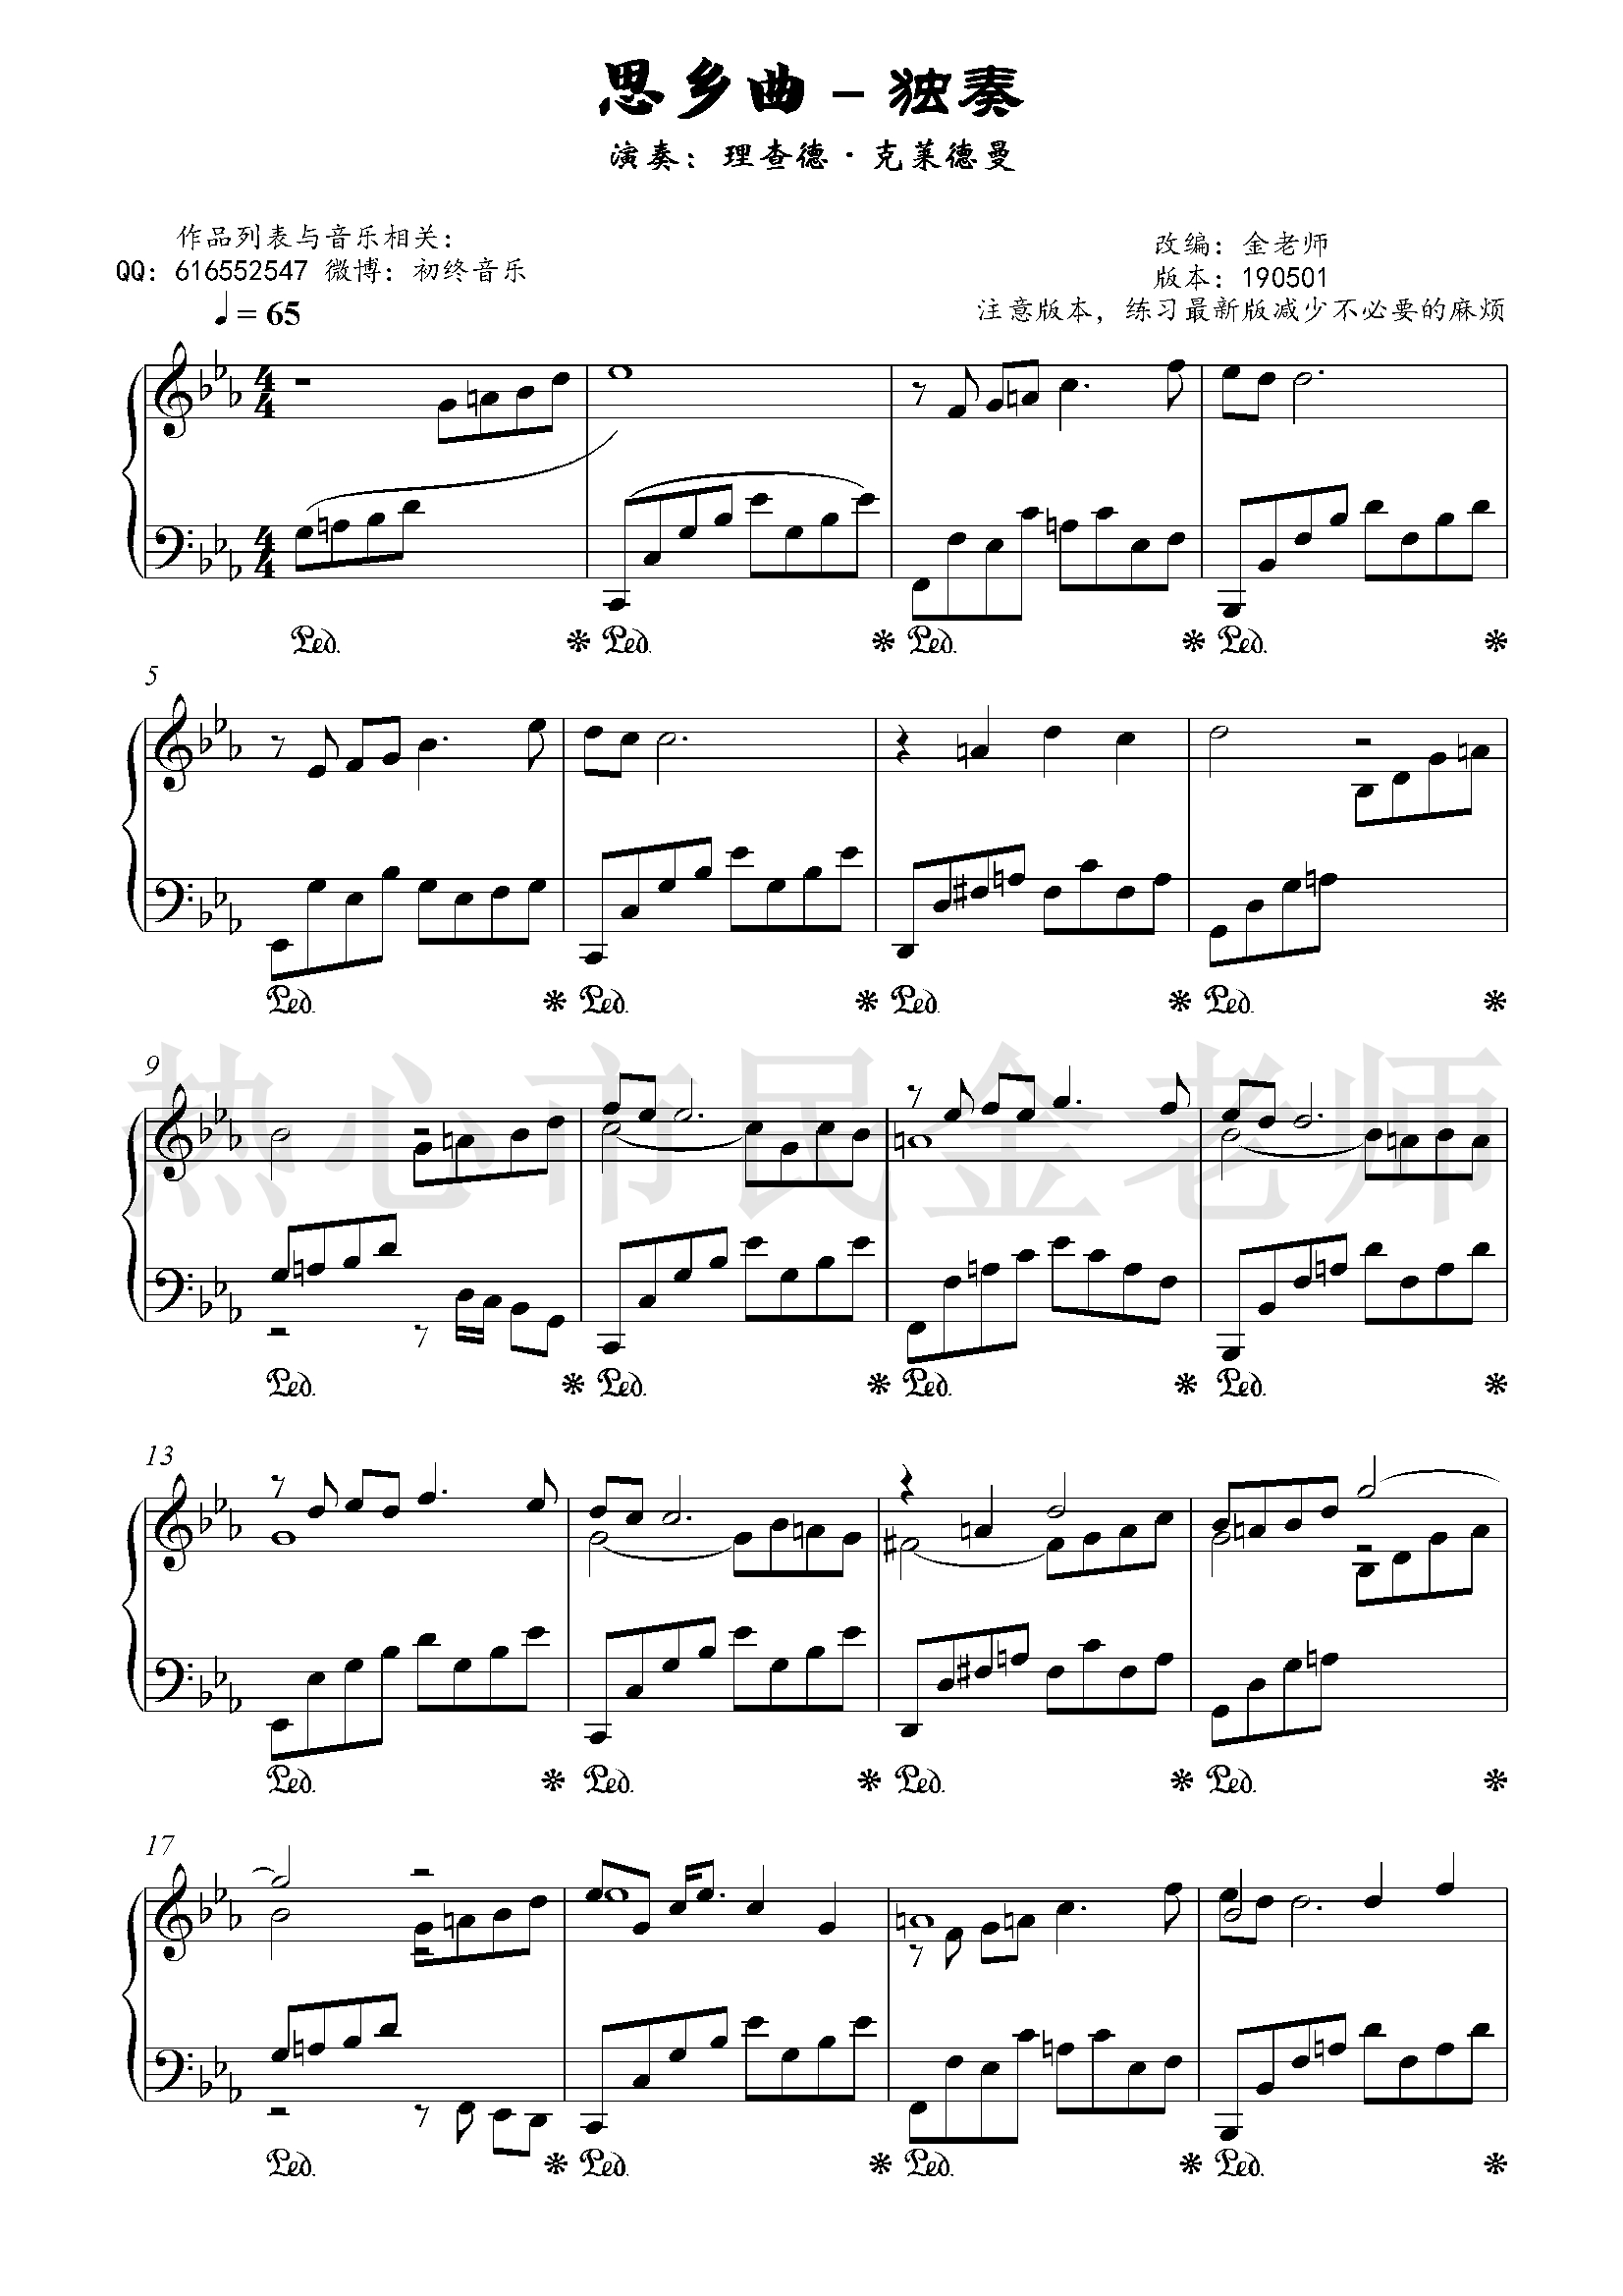 思乡曲钢琴谱-乡愁-金老师独奏1905012